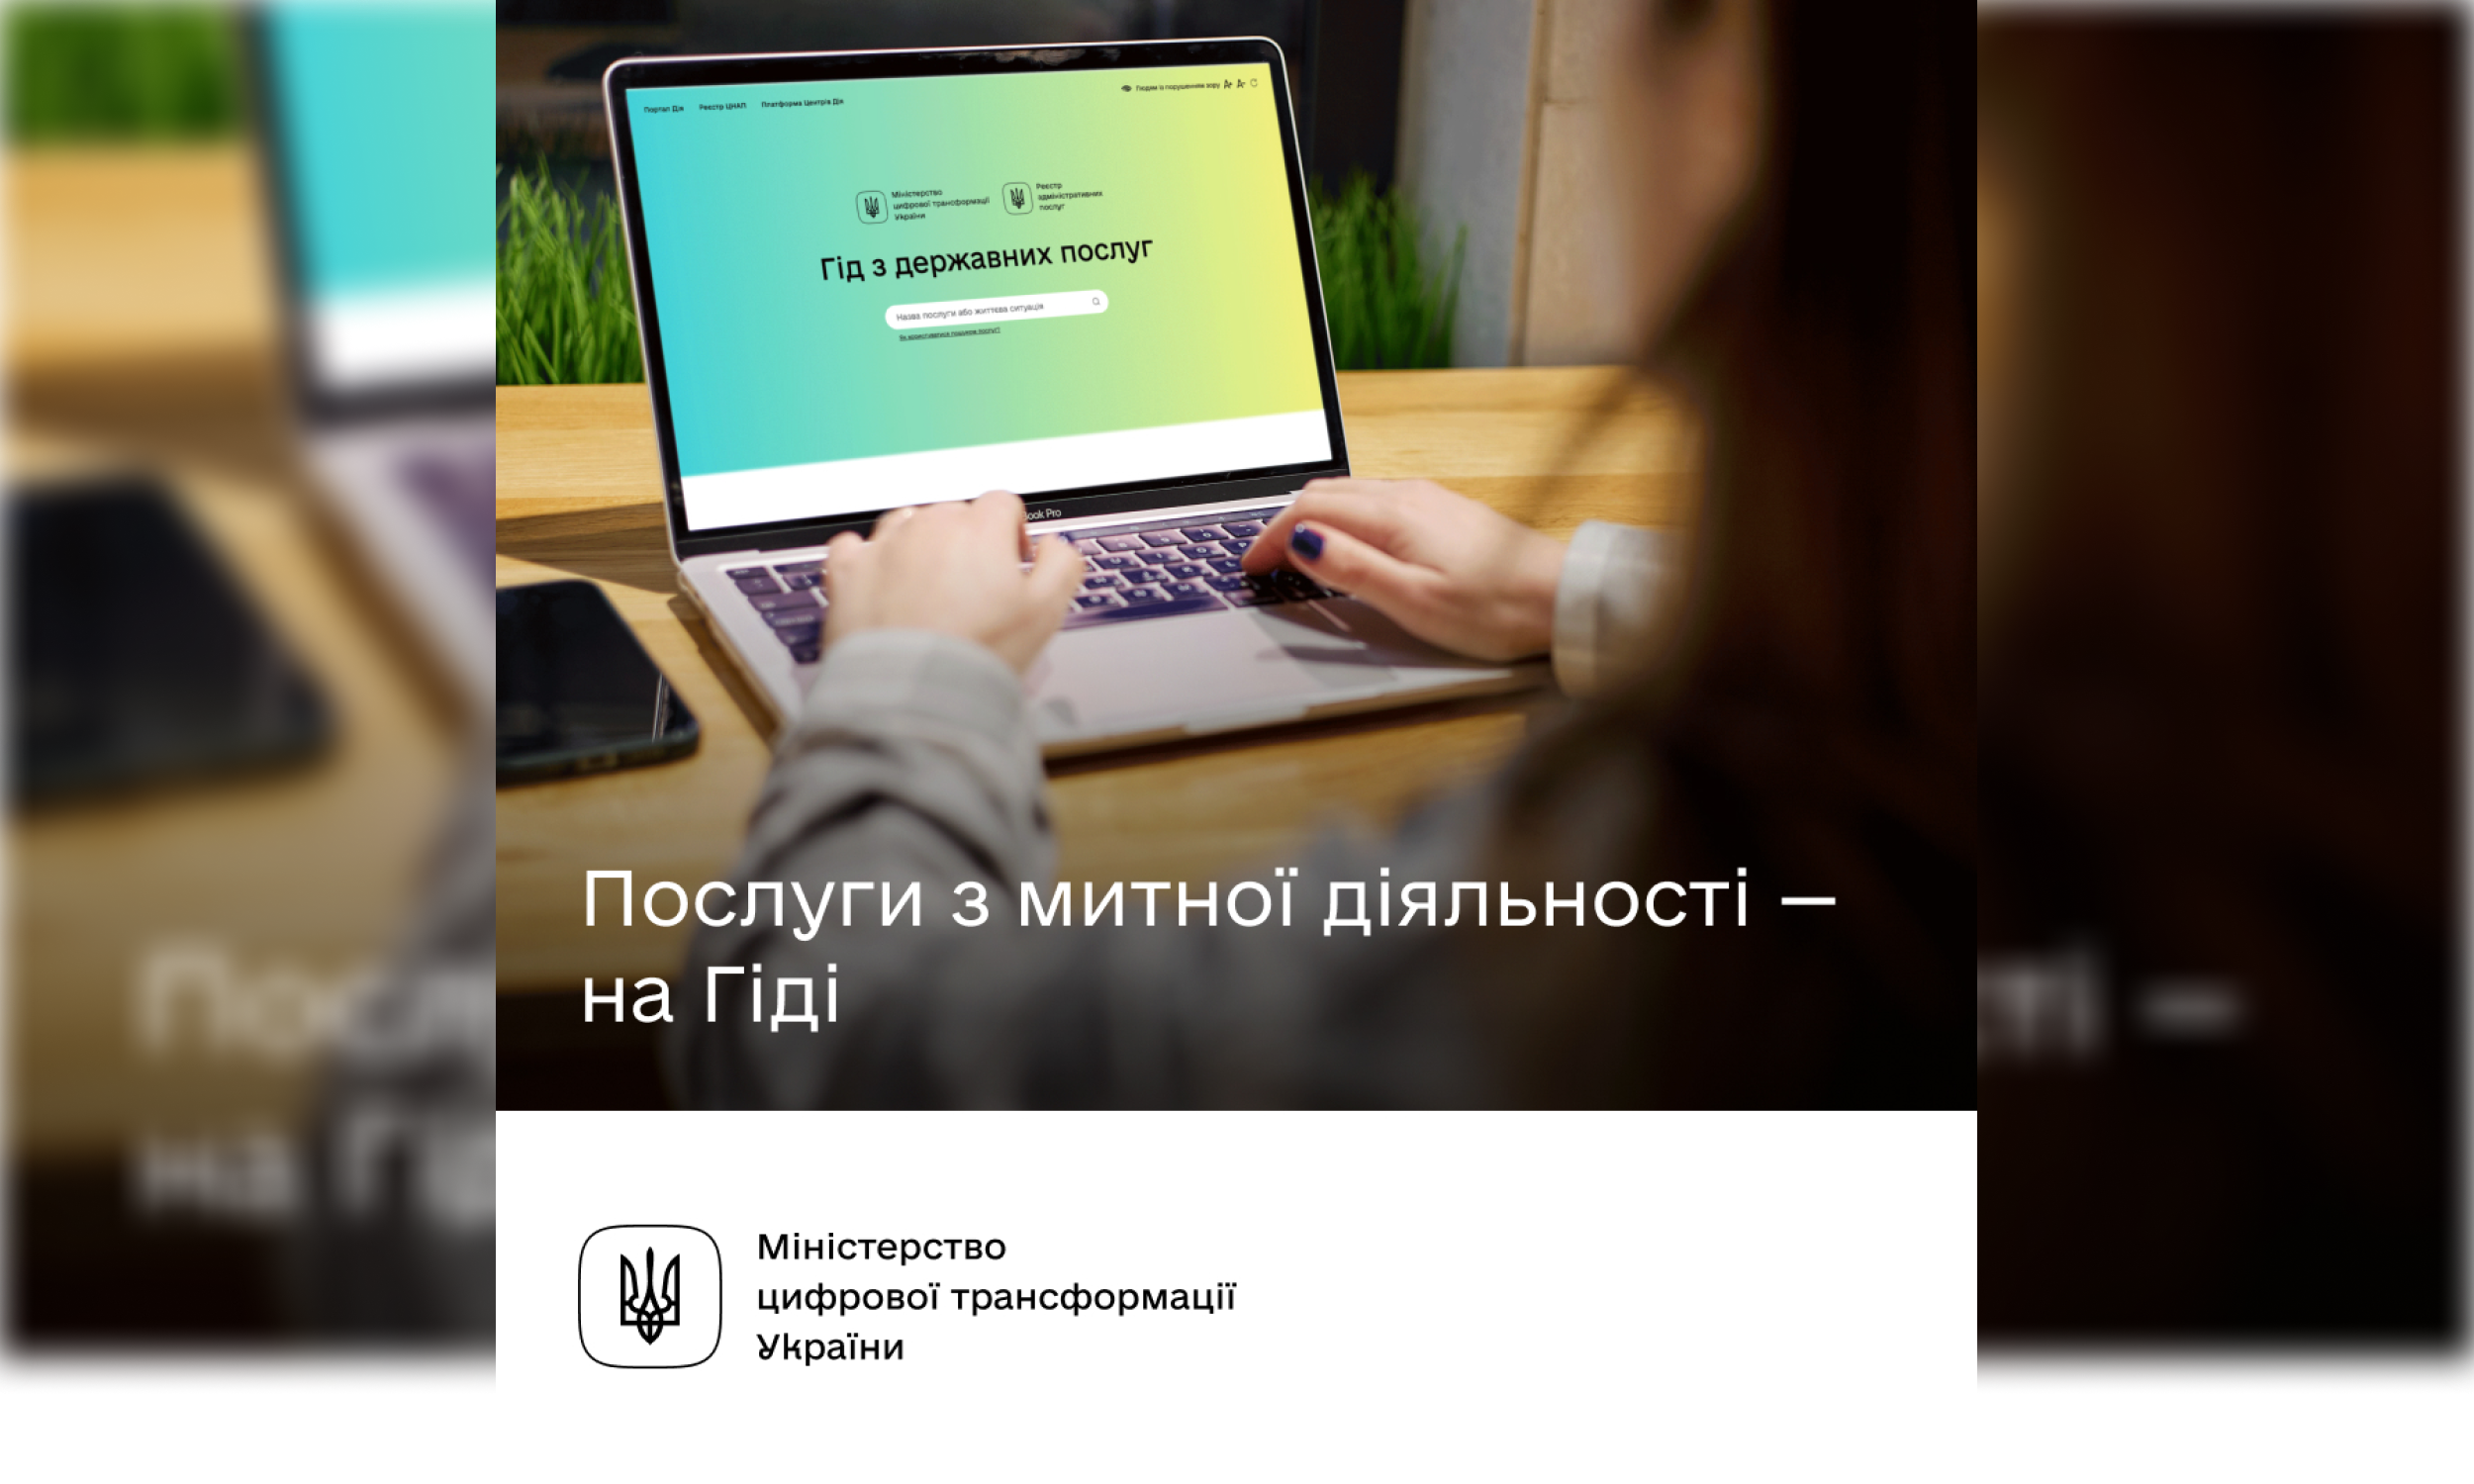 Міністерство цифрової трансформації України пояснює, як швидко отримати митні послуги